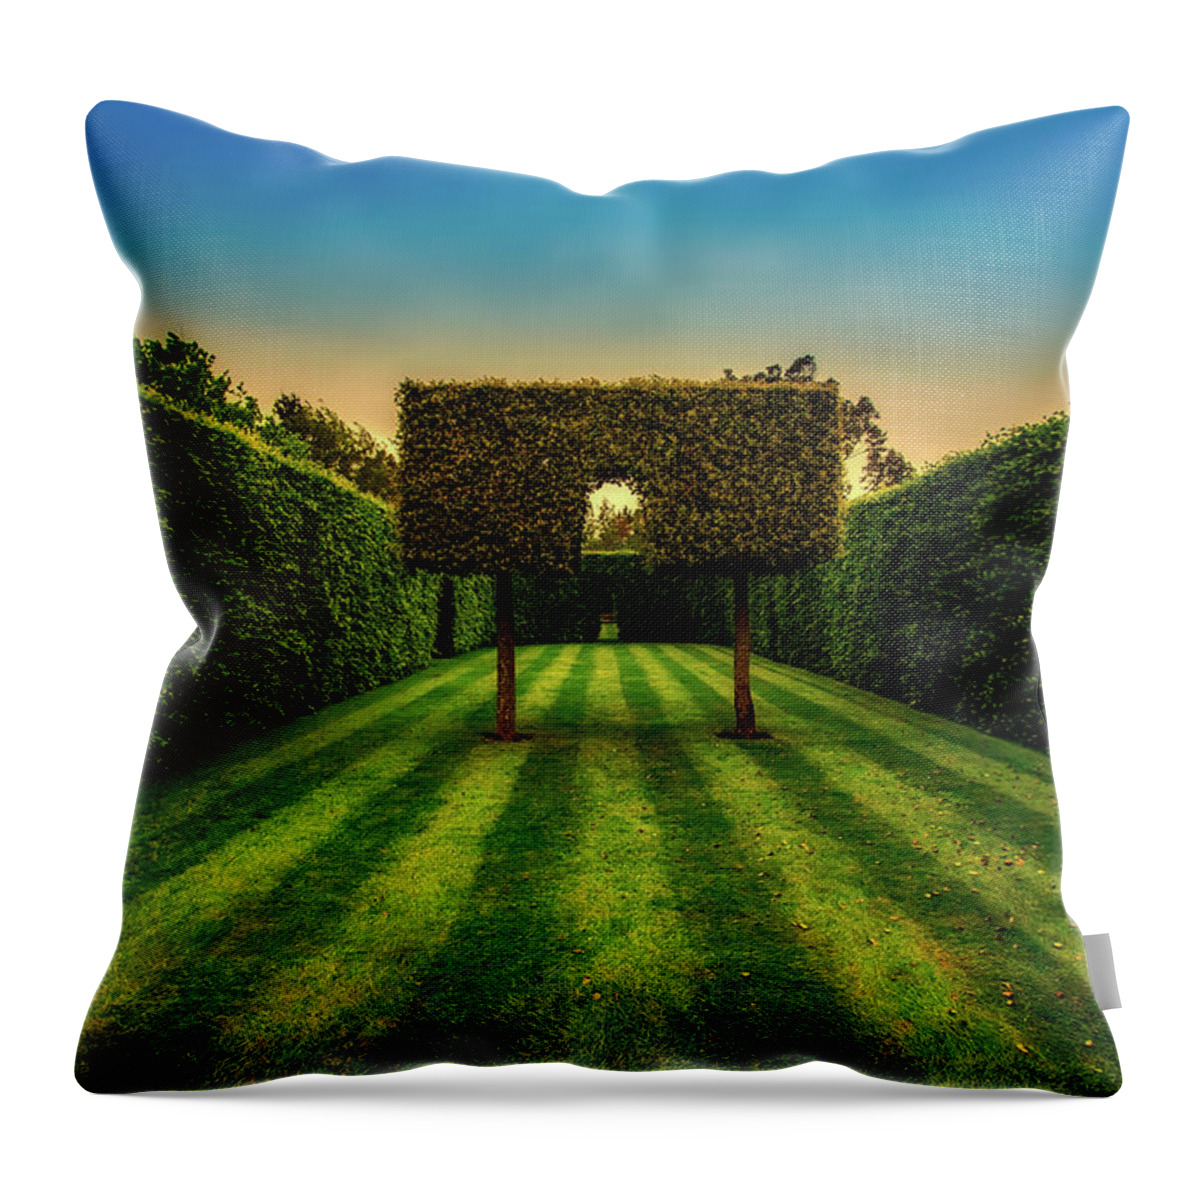 Garden Throw Pillow featuring the photograph Garden Hedge Beauty by Mountain Dreams